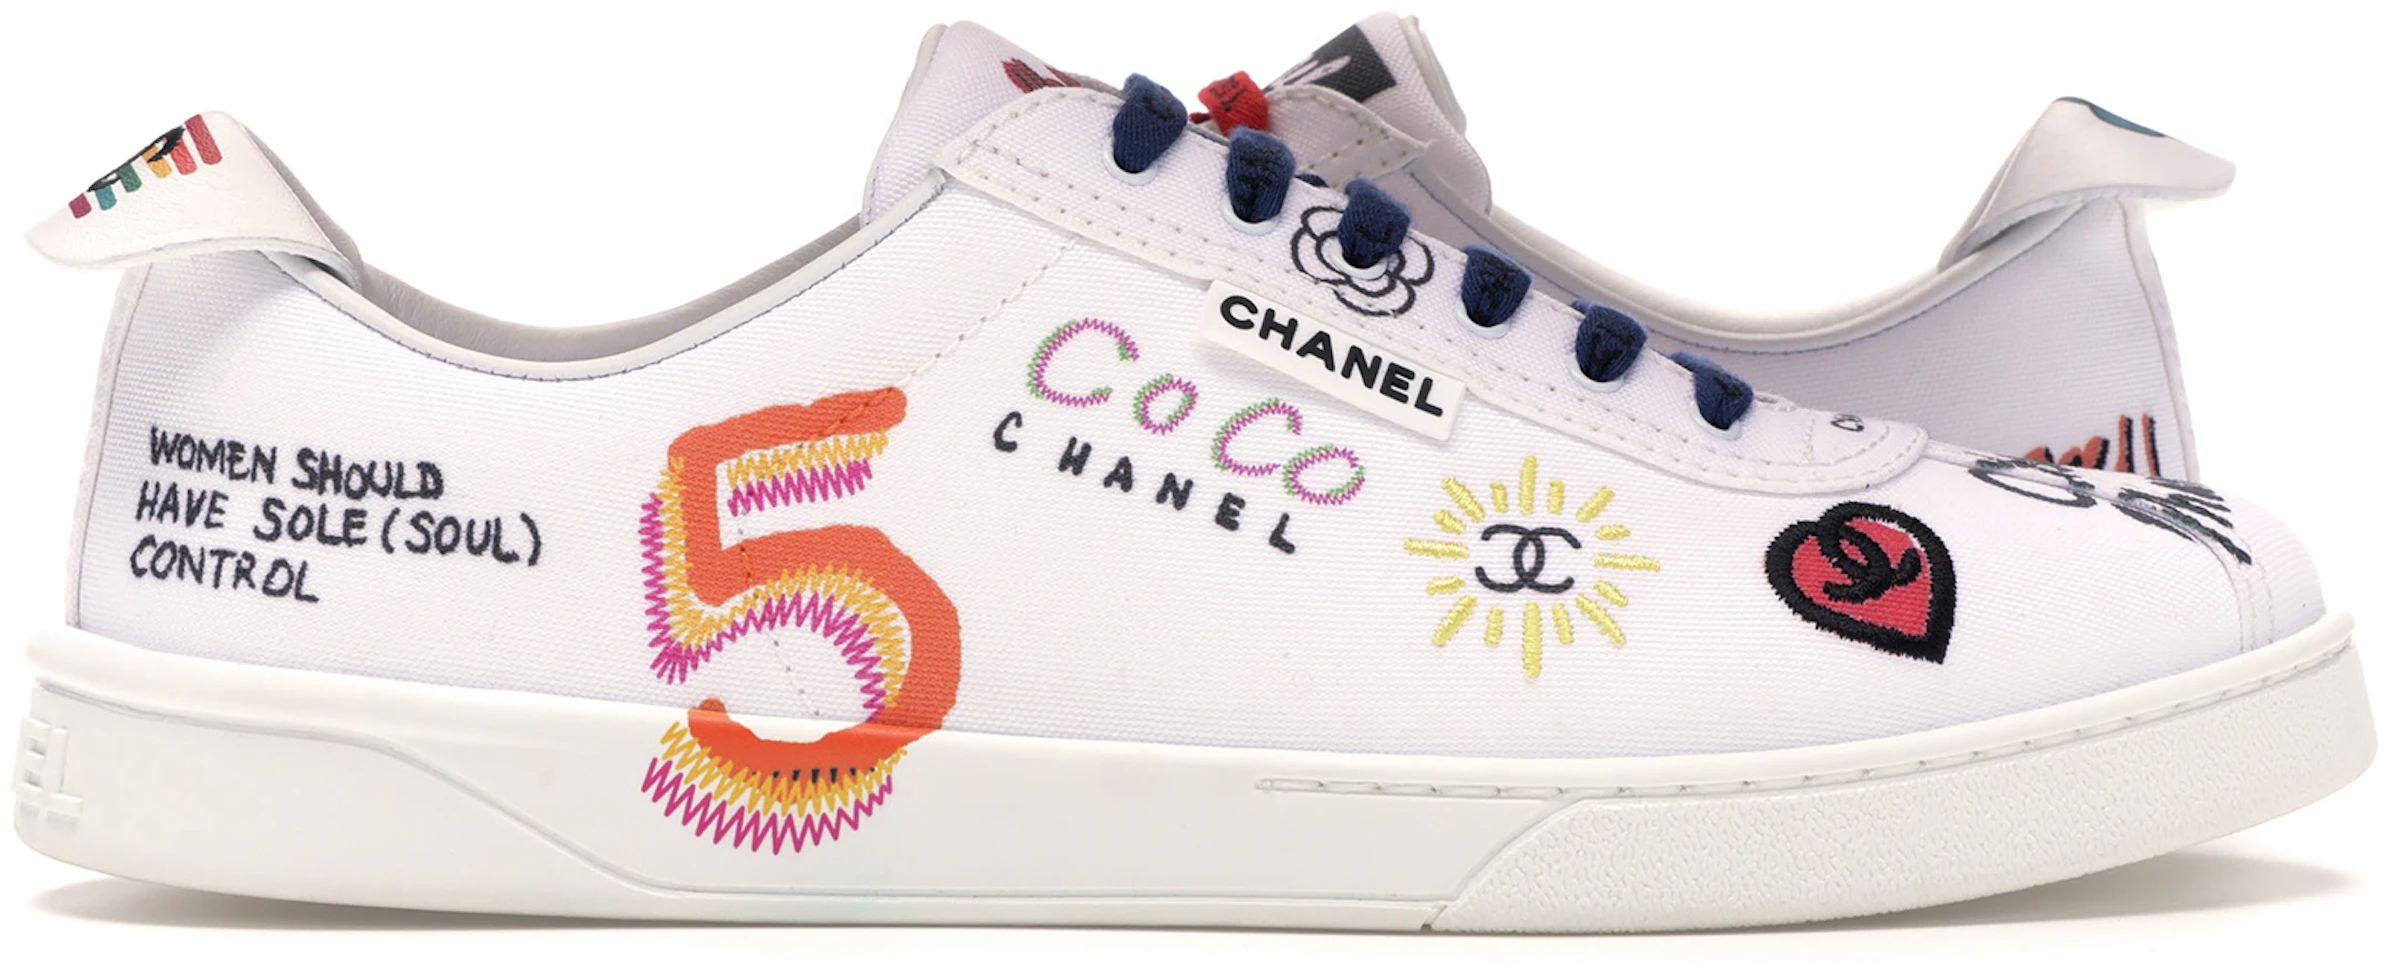 Vergelijkbaar Absorberen studio Buy Chanel Sneakers - StockX